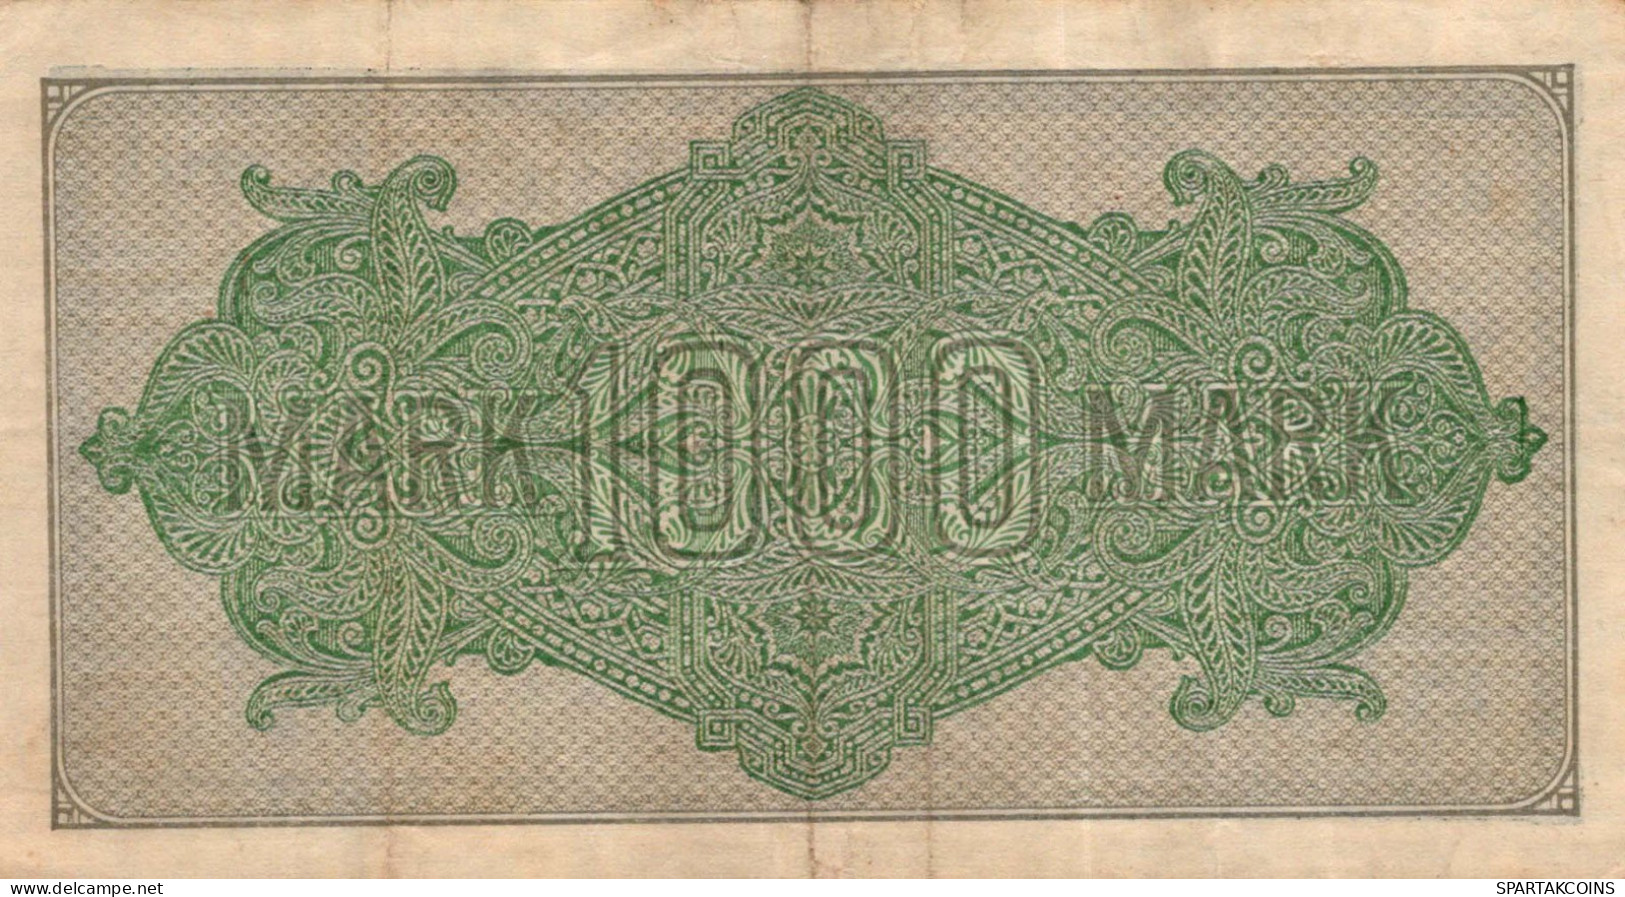 1000 MARK 1922 Stadt BERLIN DEUTSCHLAND Papiergeld Banknote #PL414 - [11] Local Banknote Issues